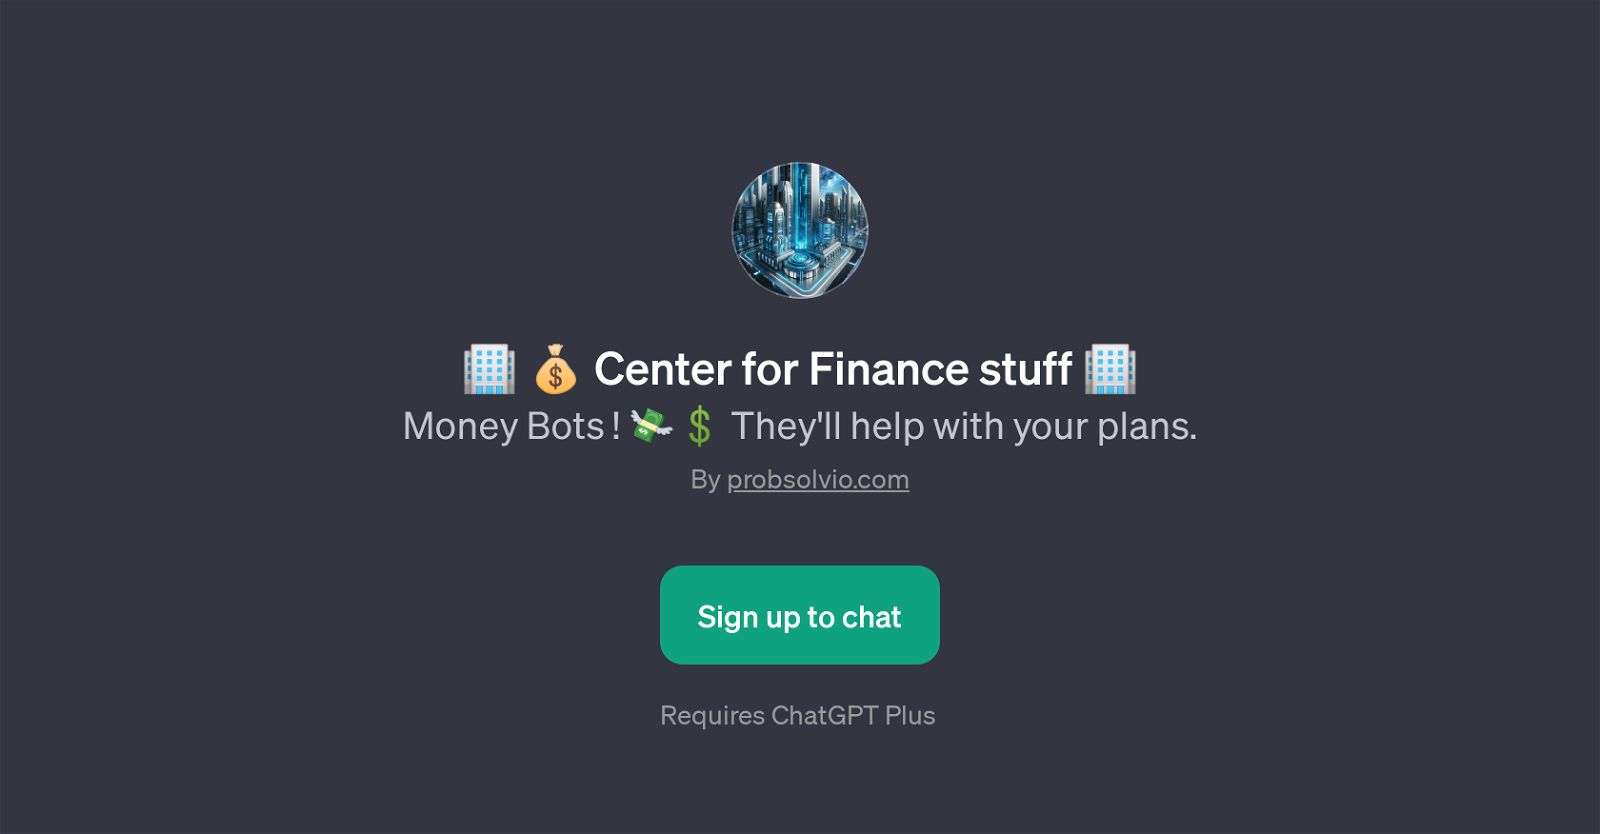 Center for Finance stuff website